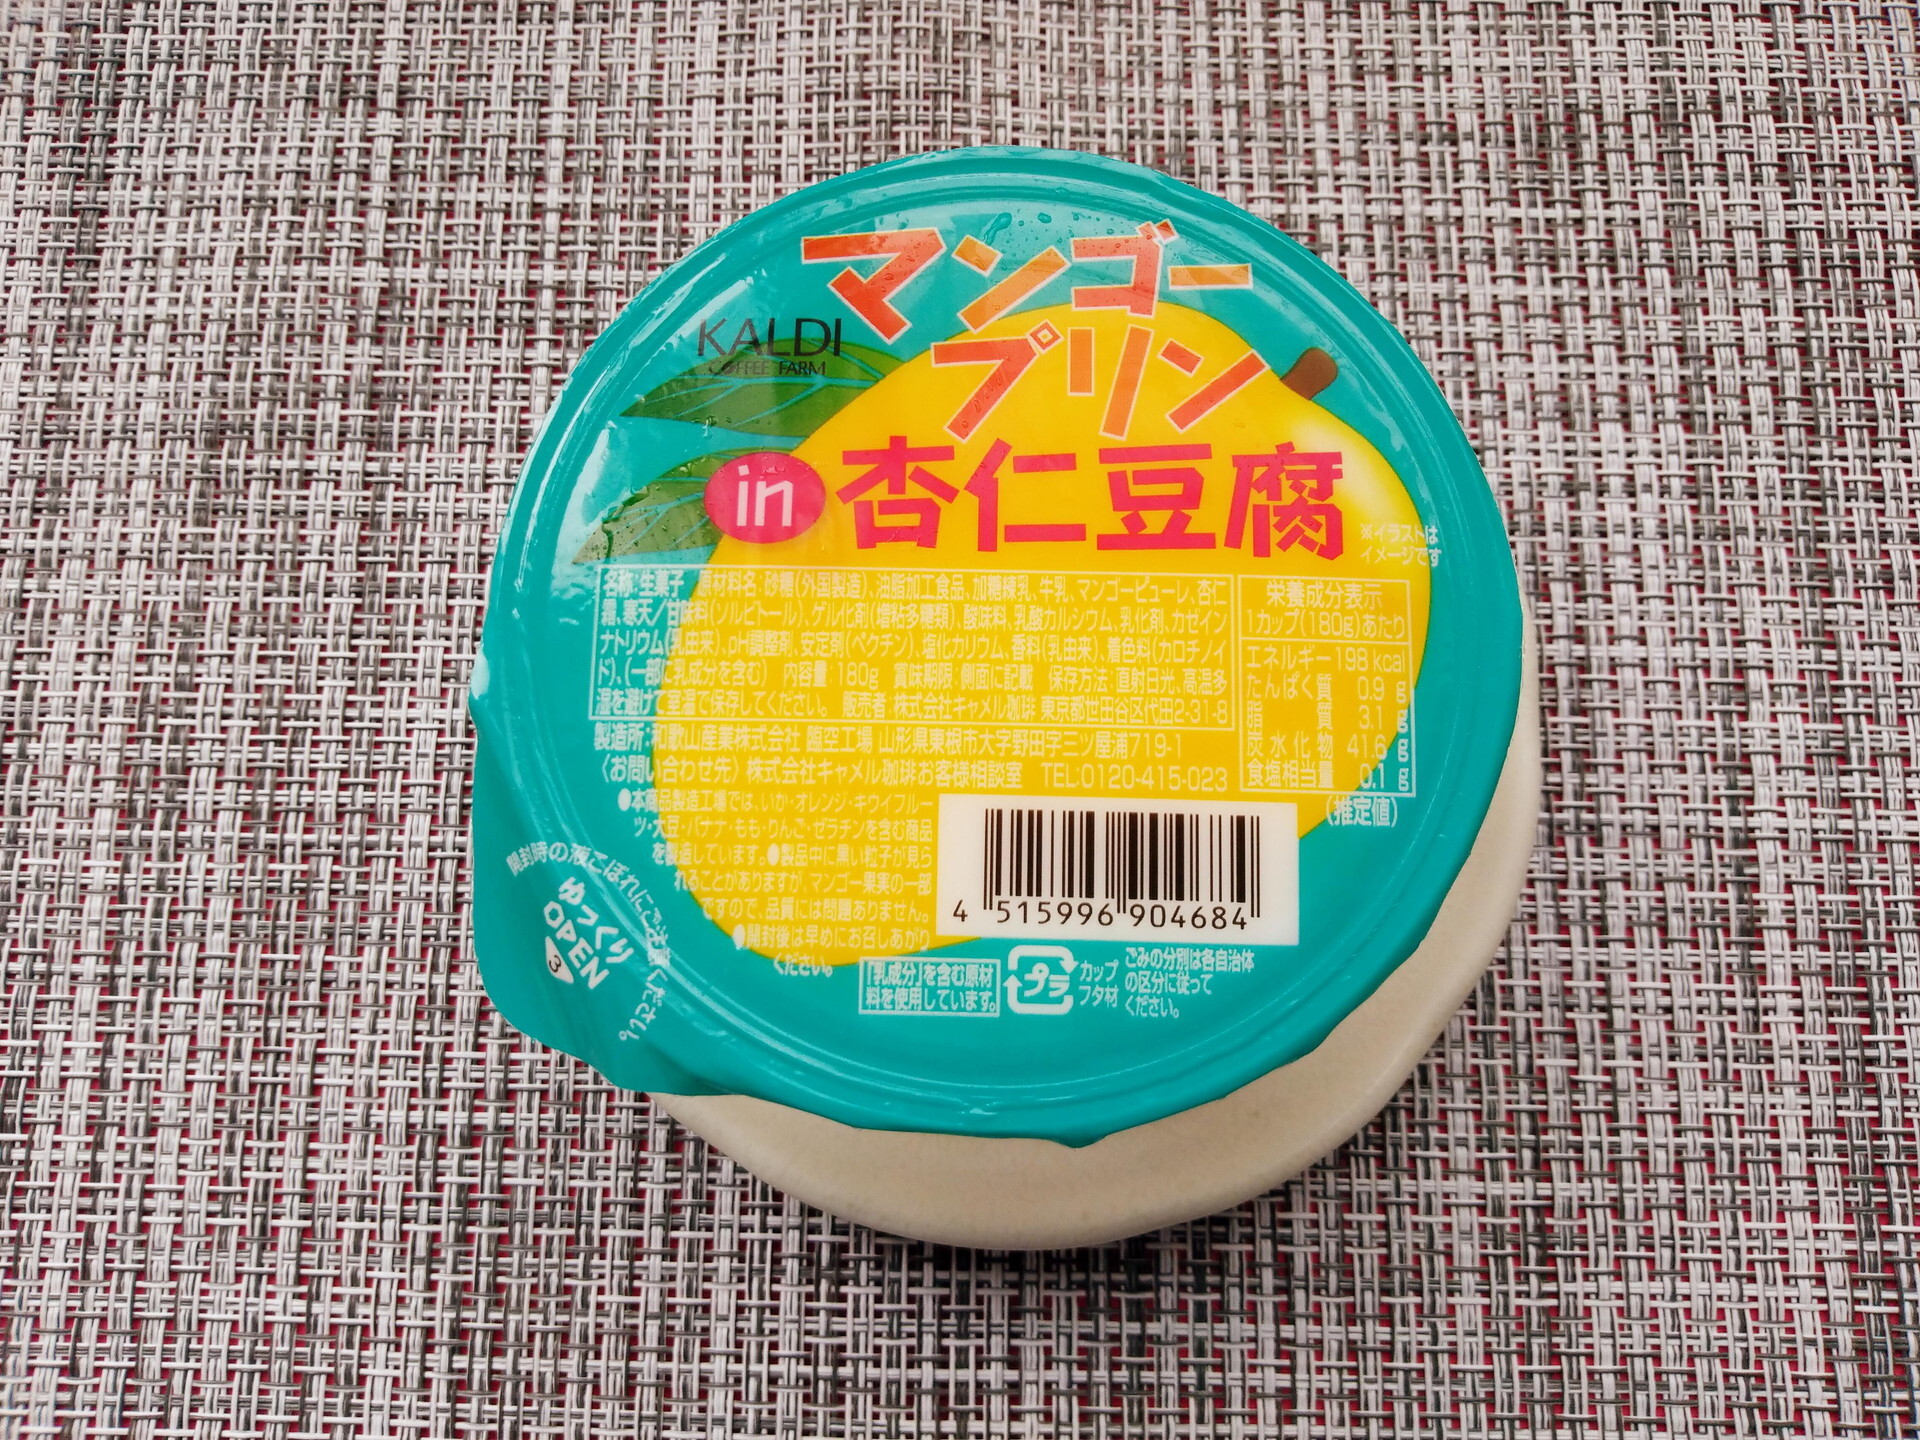 カルディ「マンゴープリン in杏仁豆腐」